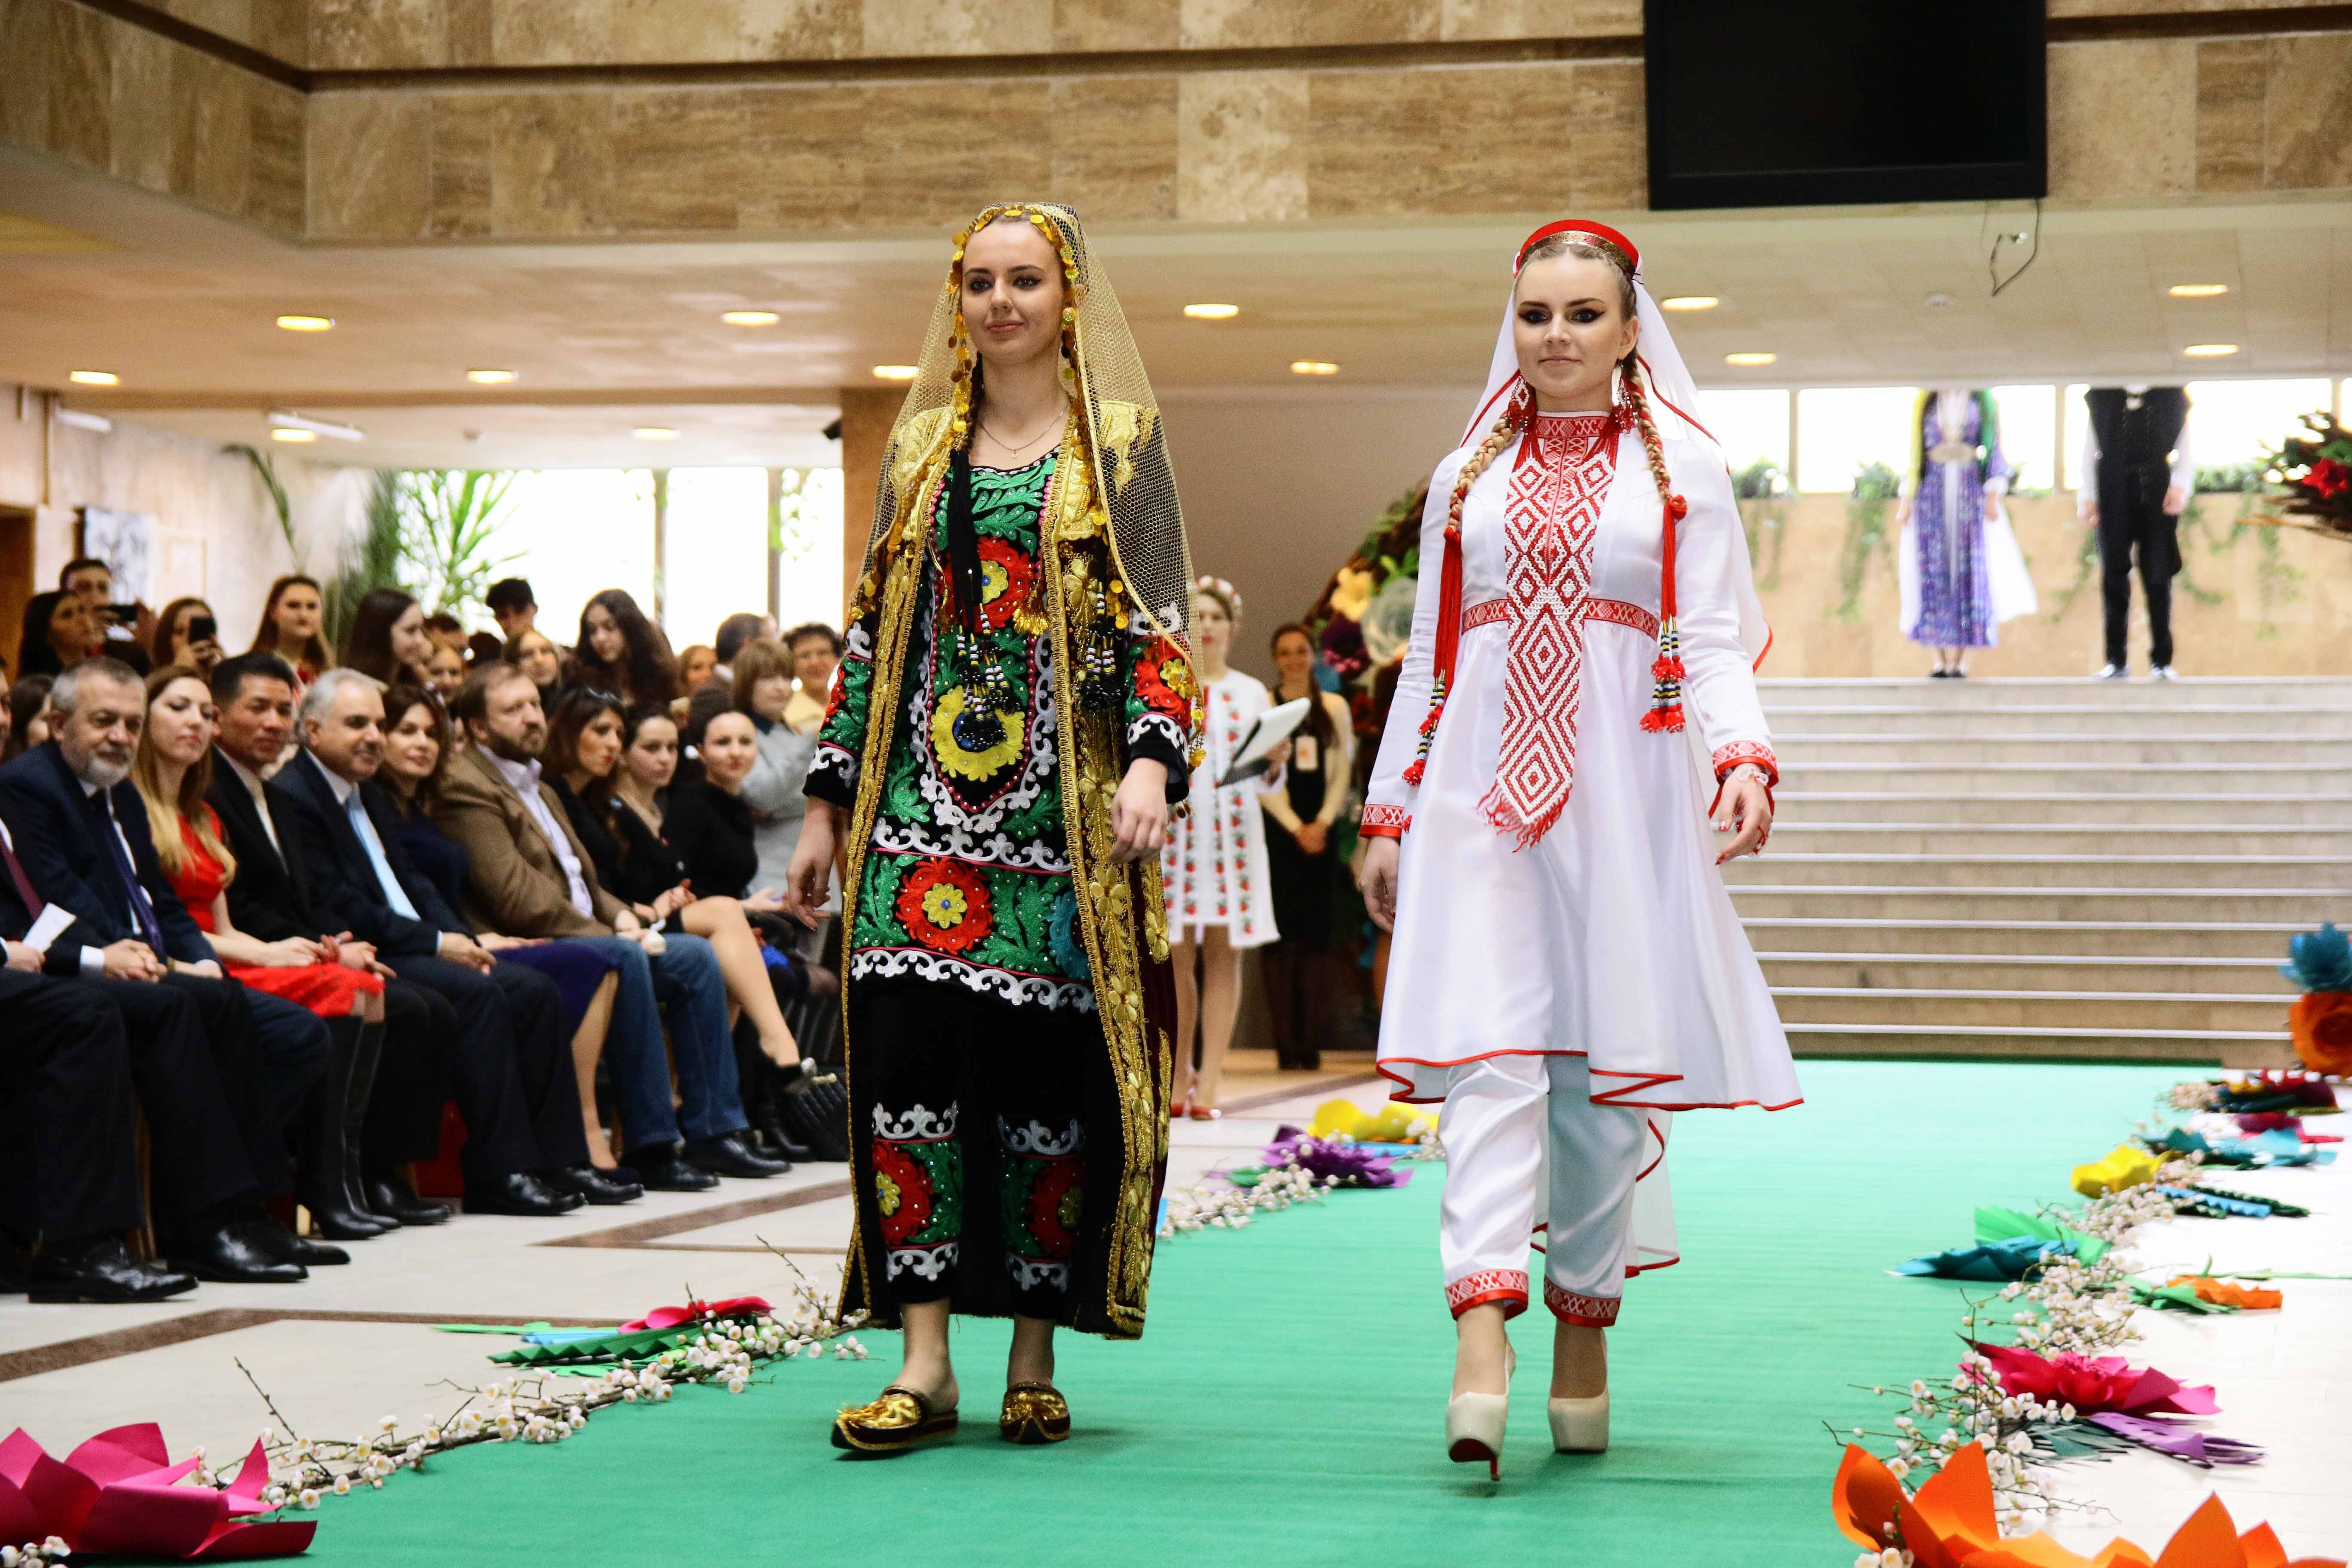 Узбекский платья со штанами